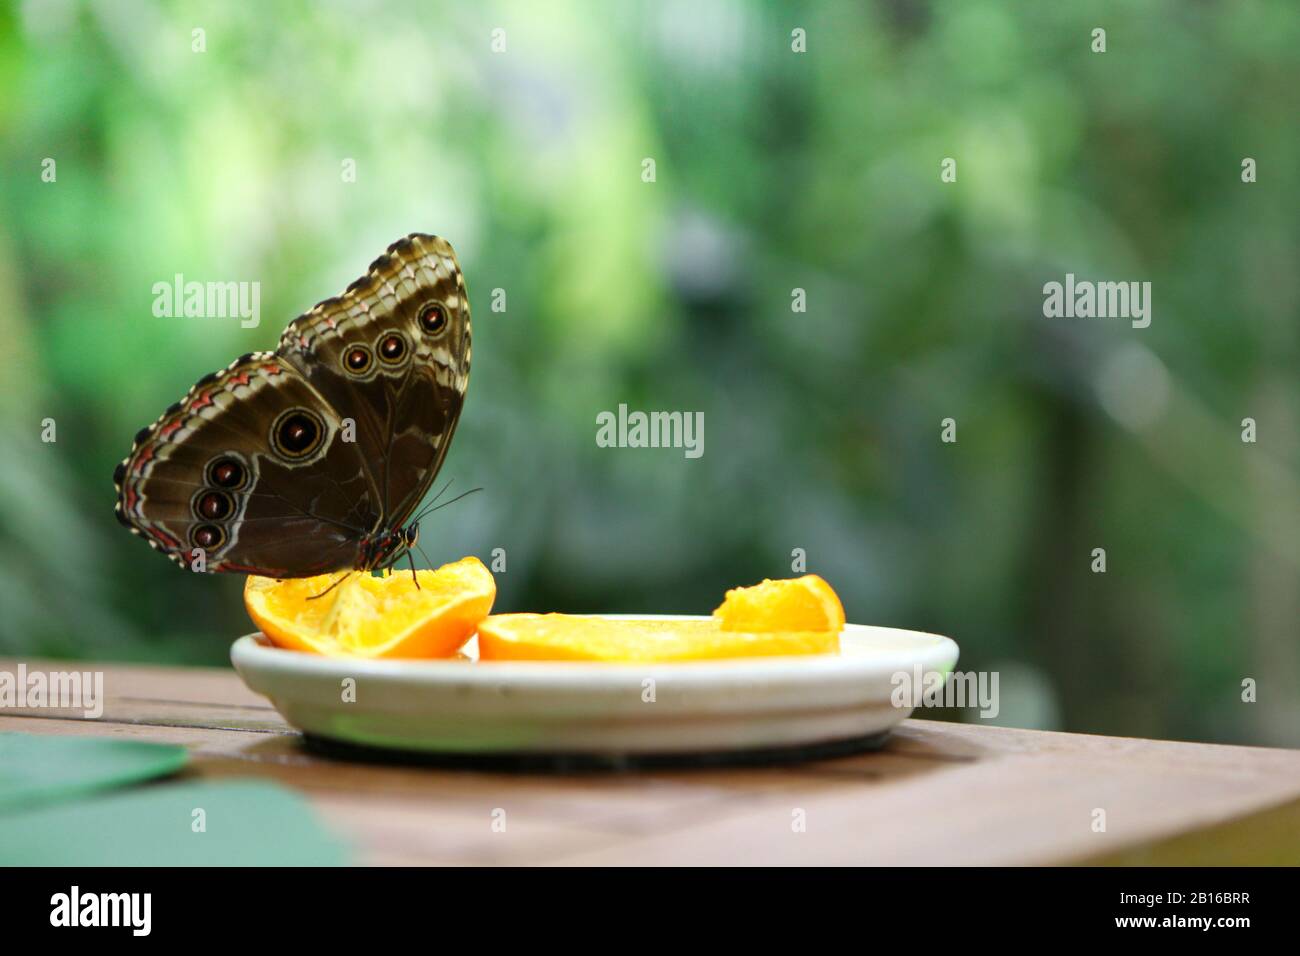 Tropischer Schmetterling Caligo Atreus, der auf einer orangefarbenen Scheibe aufgehangen wird. Fütterungs- Einstinkt. Wilde Natur Stockfoto